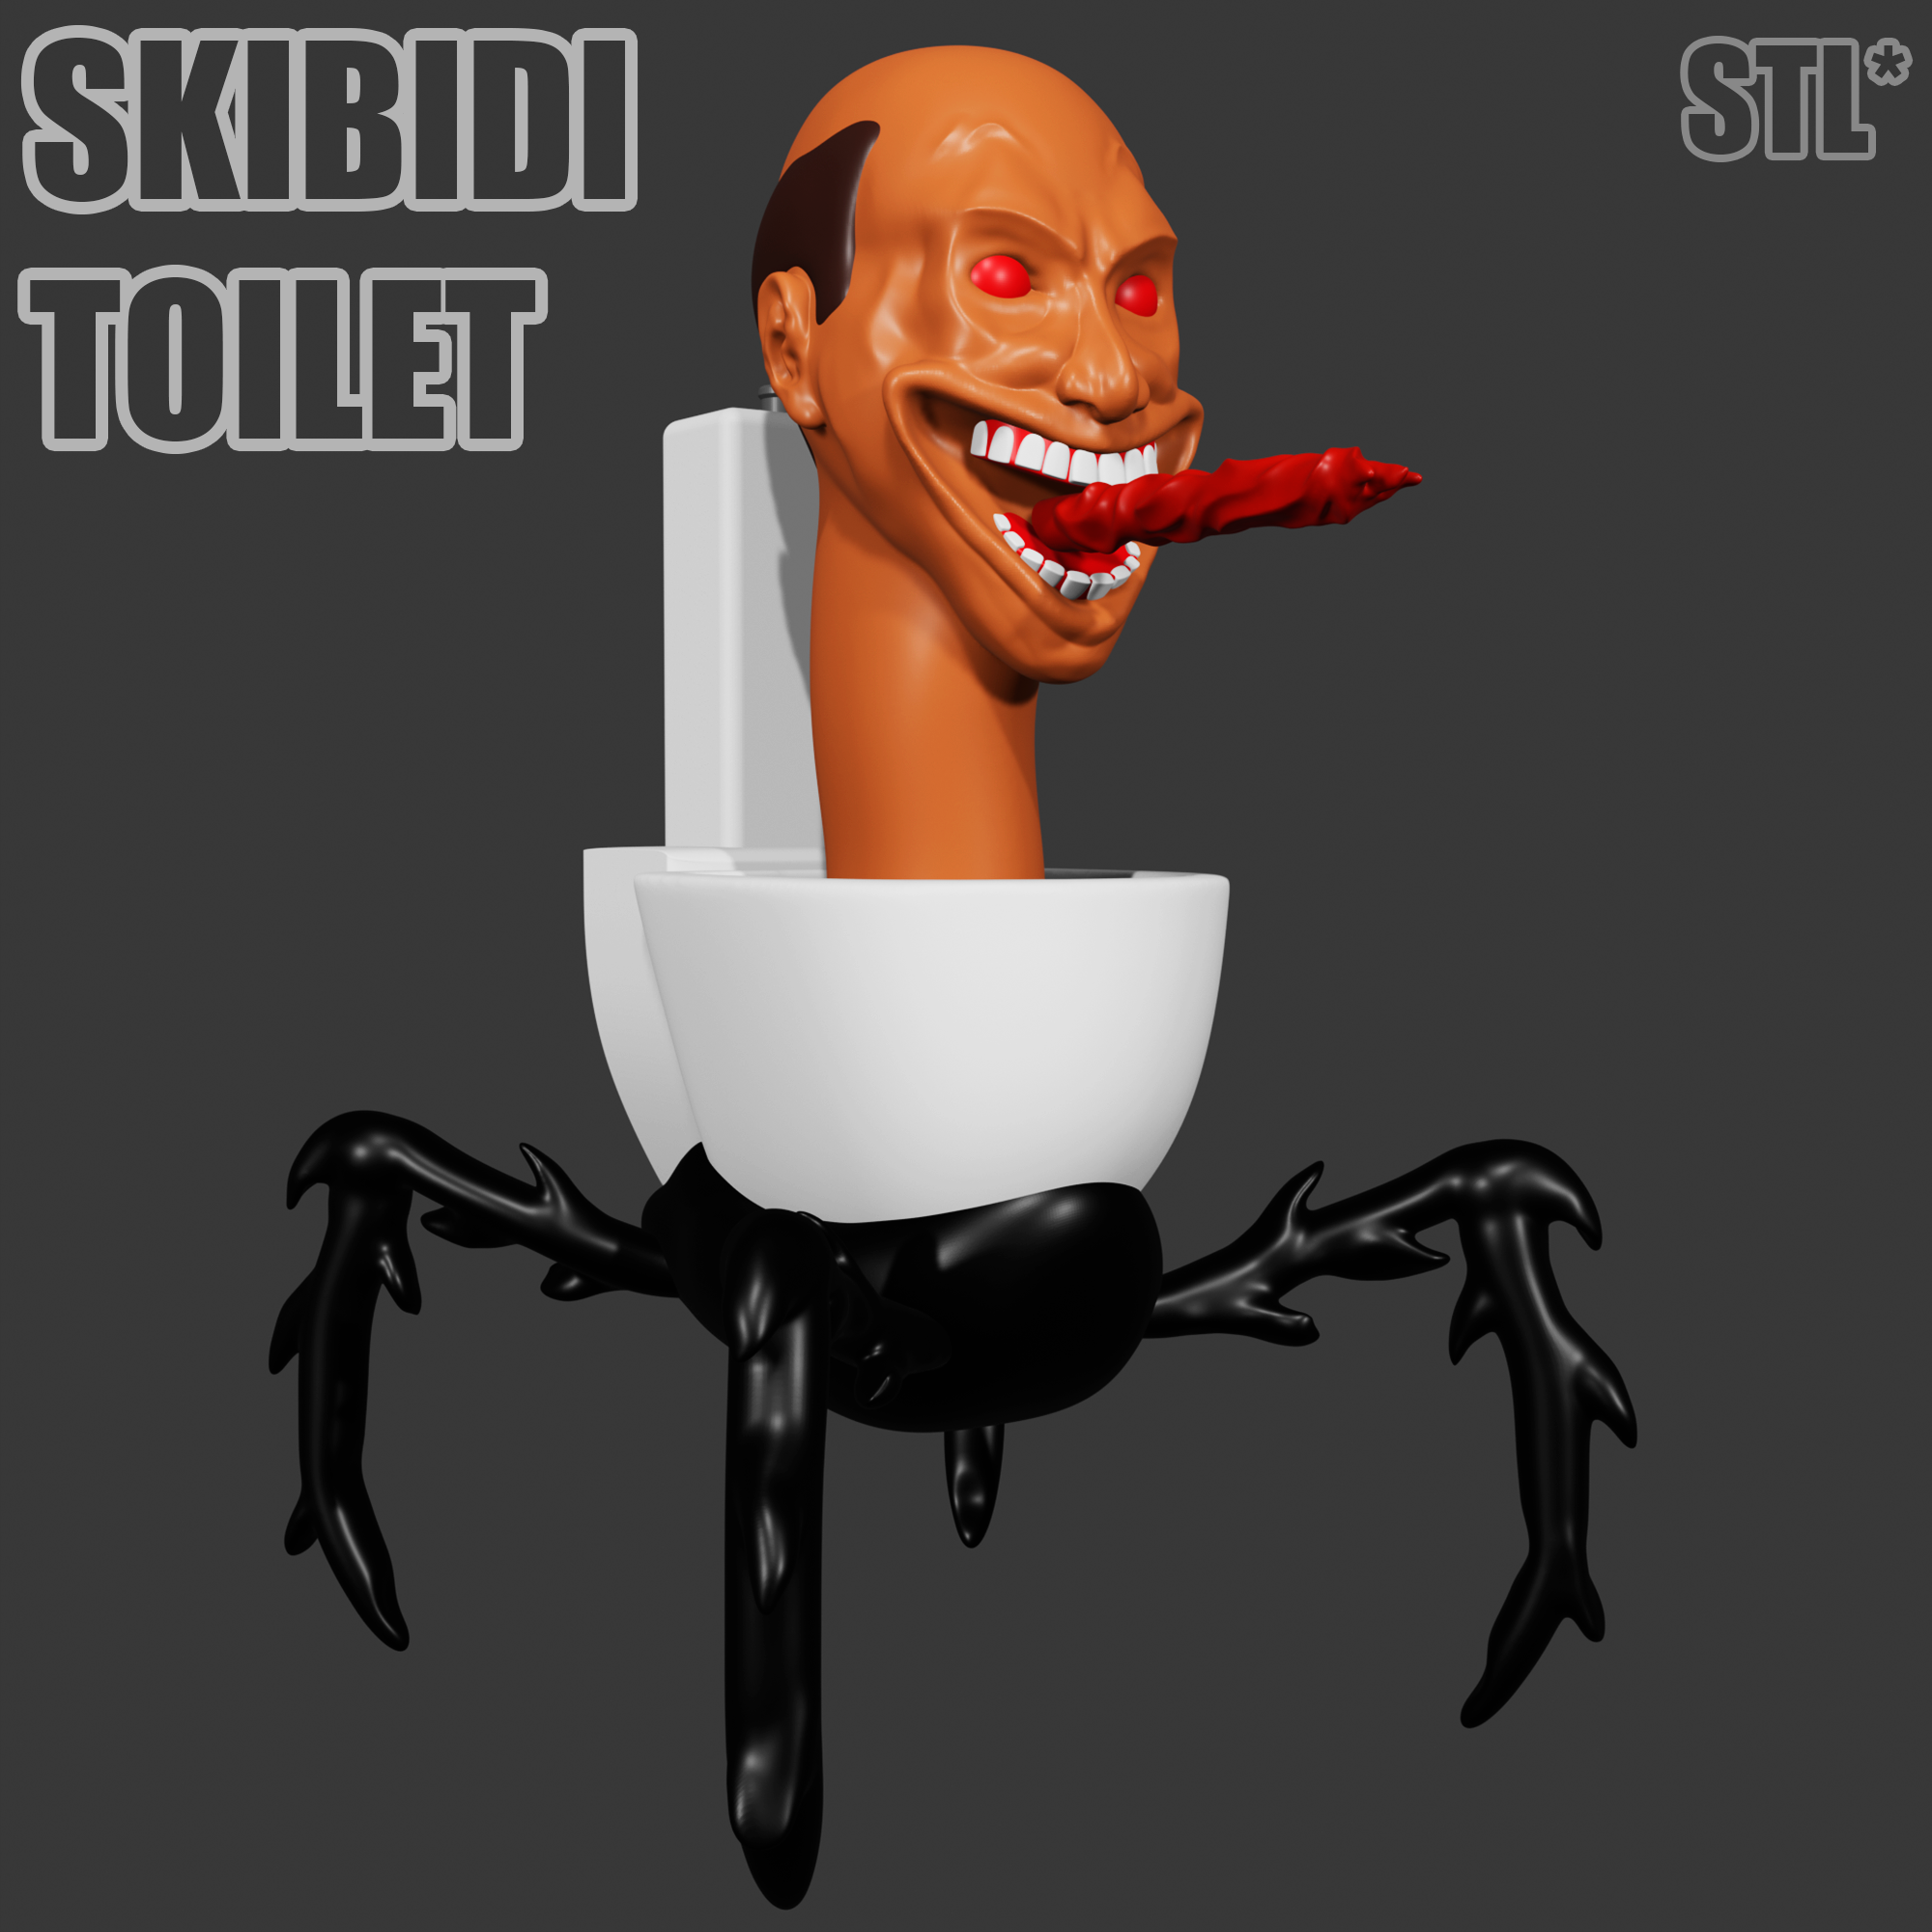 Skibidi toilet 47/Gallery, Skibidi Toilet Wiki